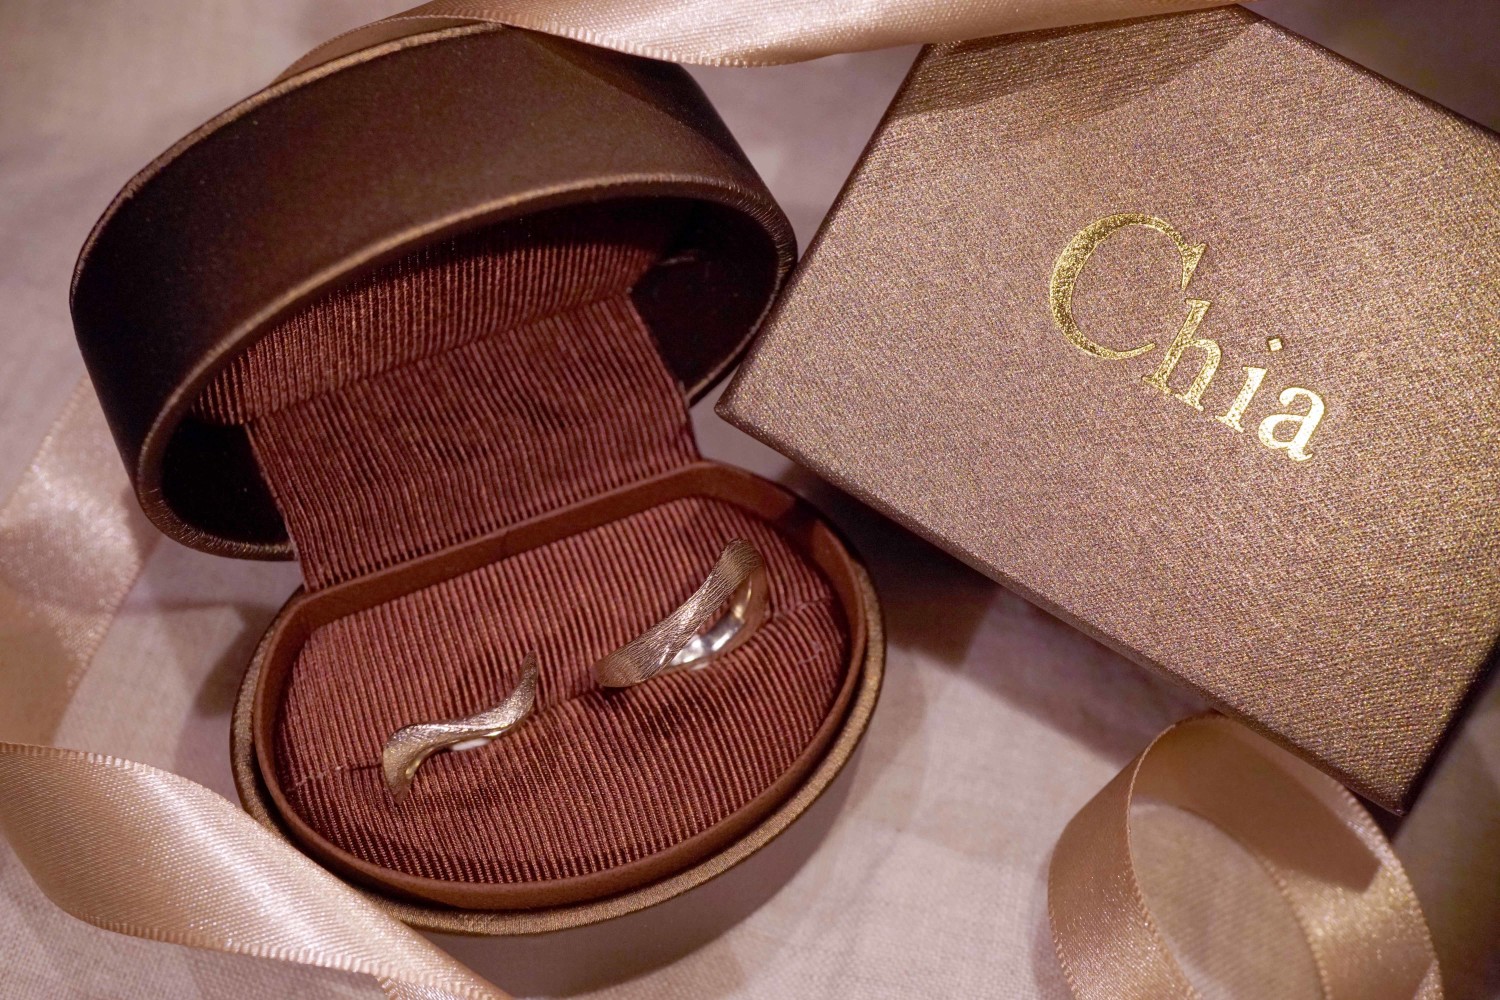 專屬於我們的婚戒-Chia Jewelry客製化結婚對戒 | Be-She一個專為女性著想的網站